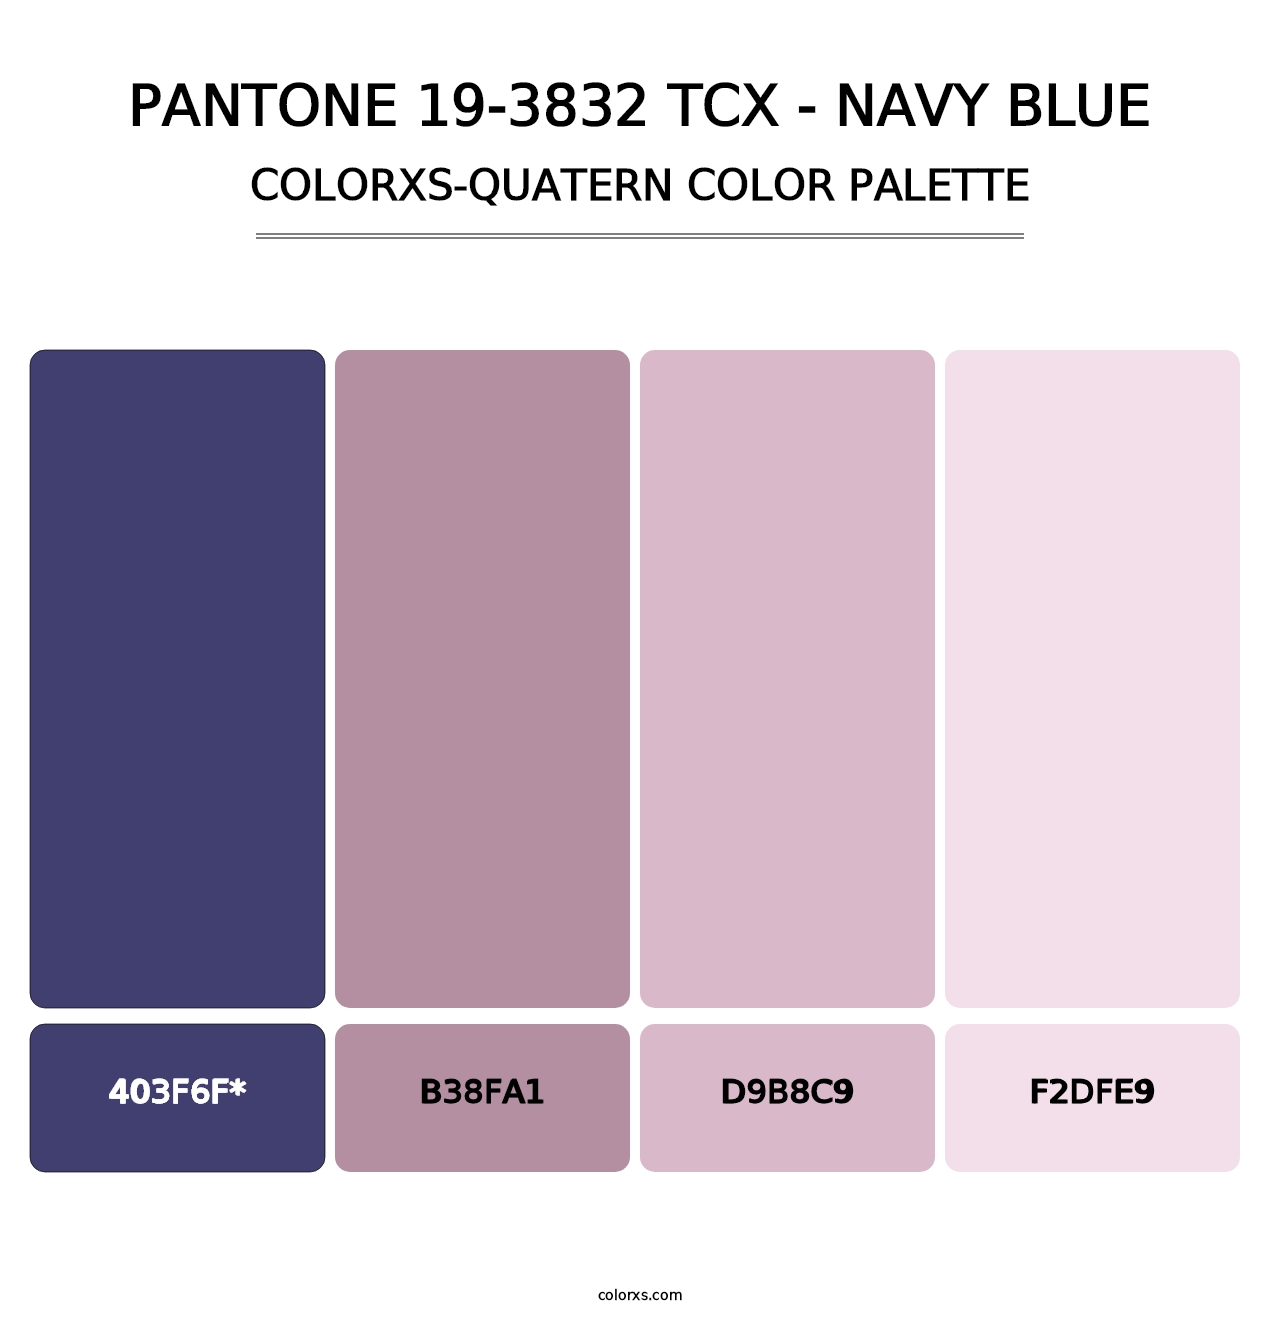 PANTONE 19-3832 TCX - Navy Blue - Colorxs Quad Palette